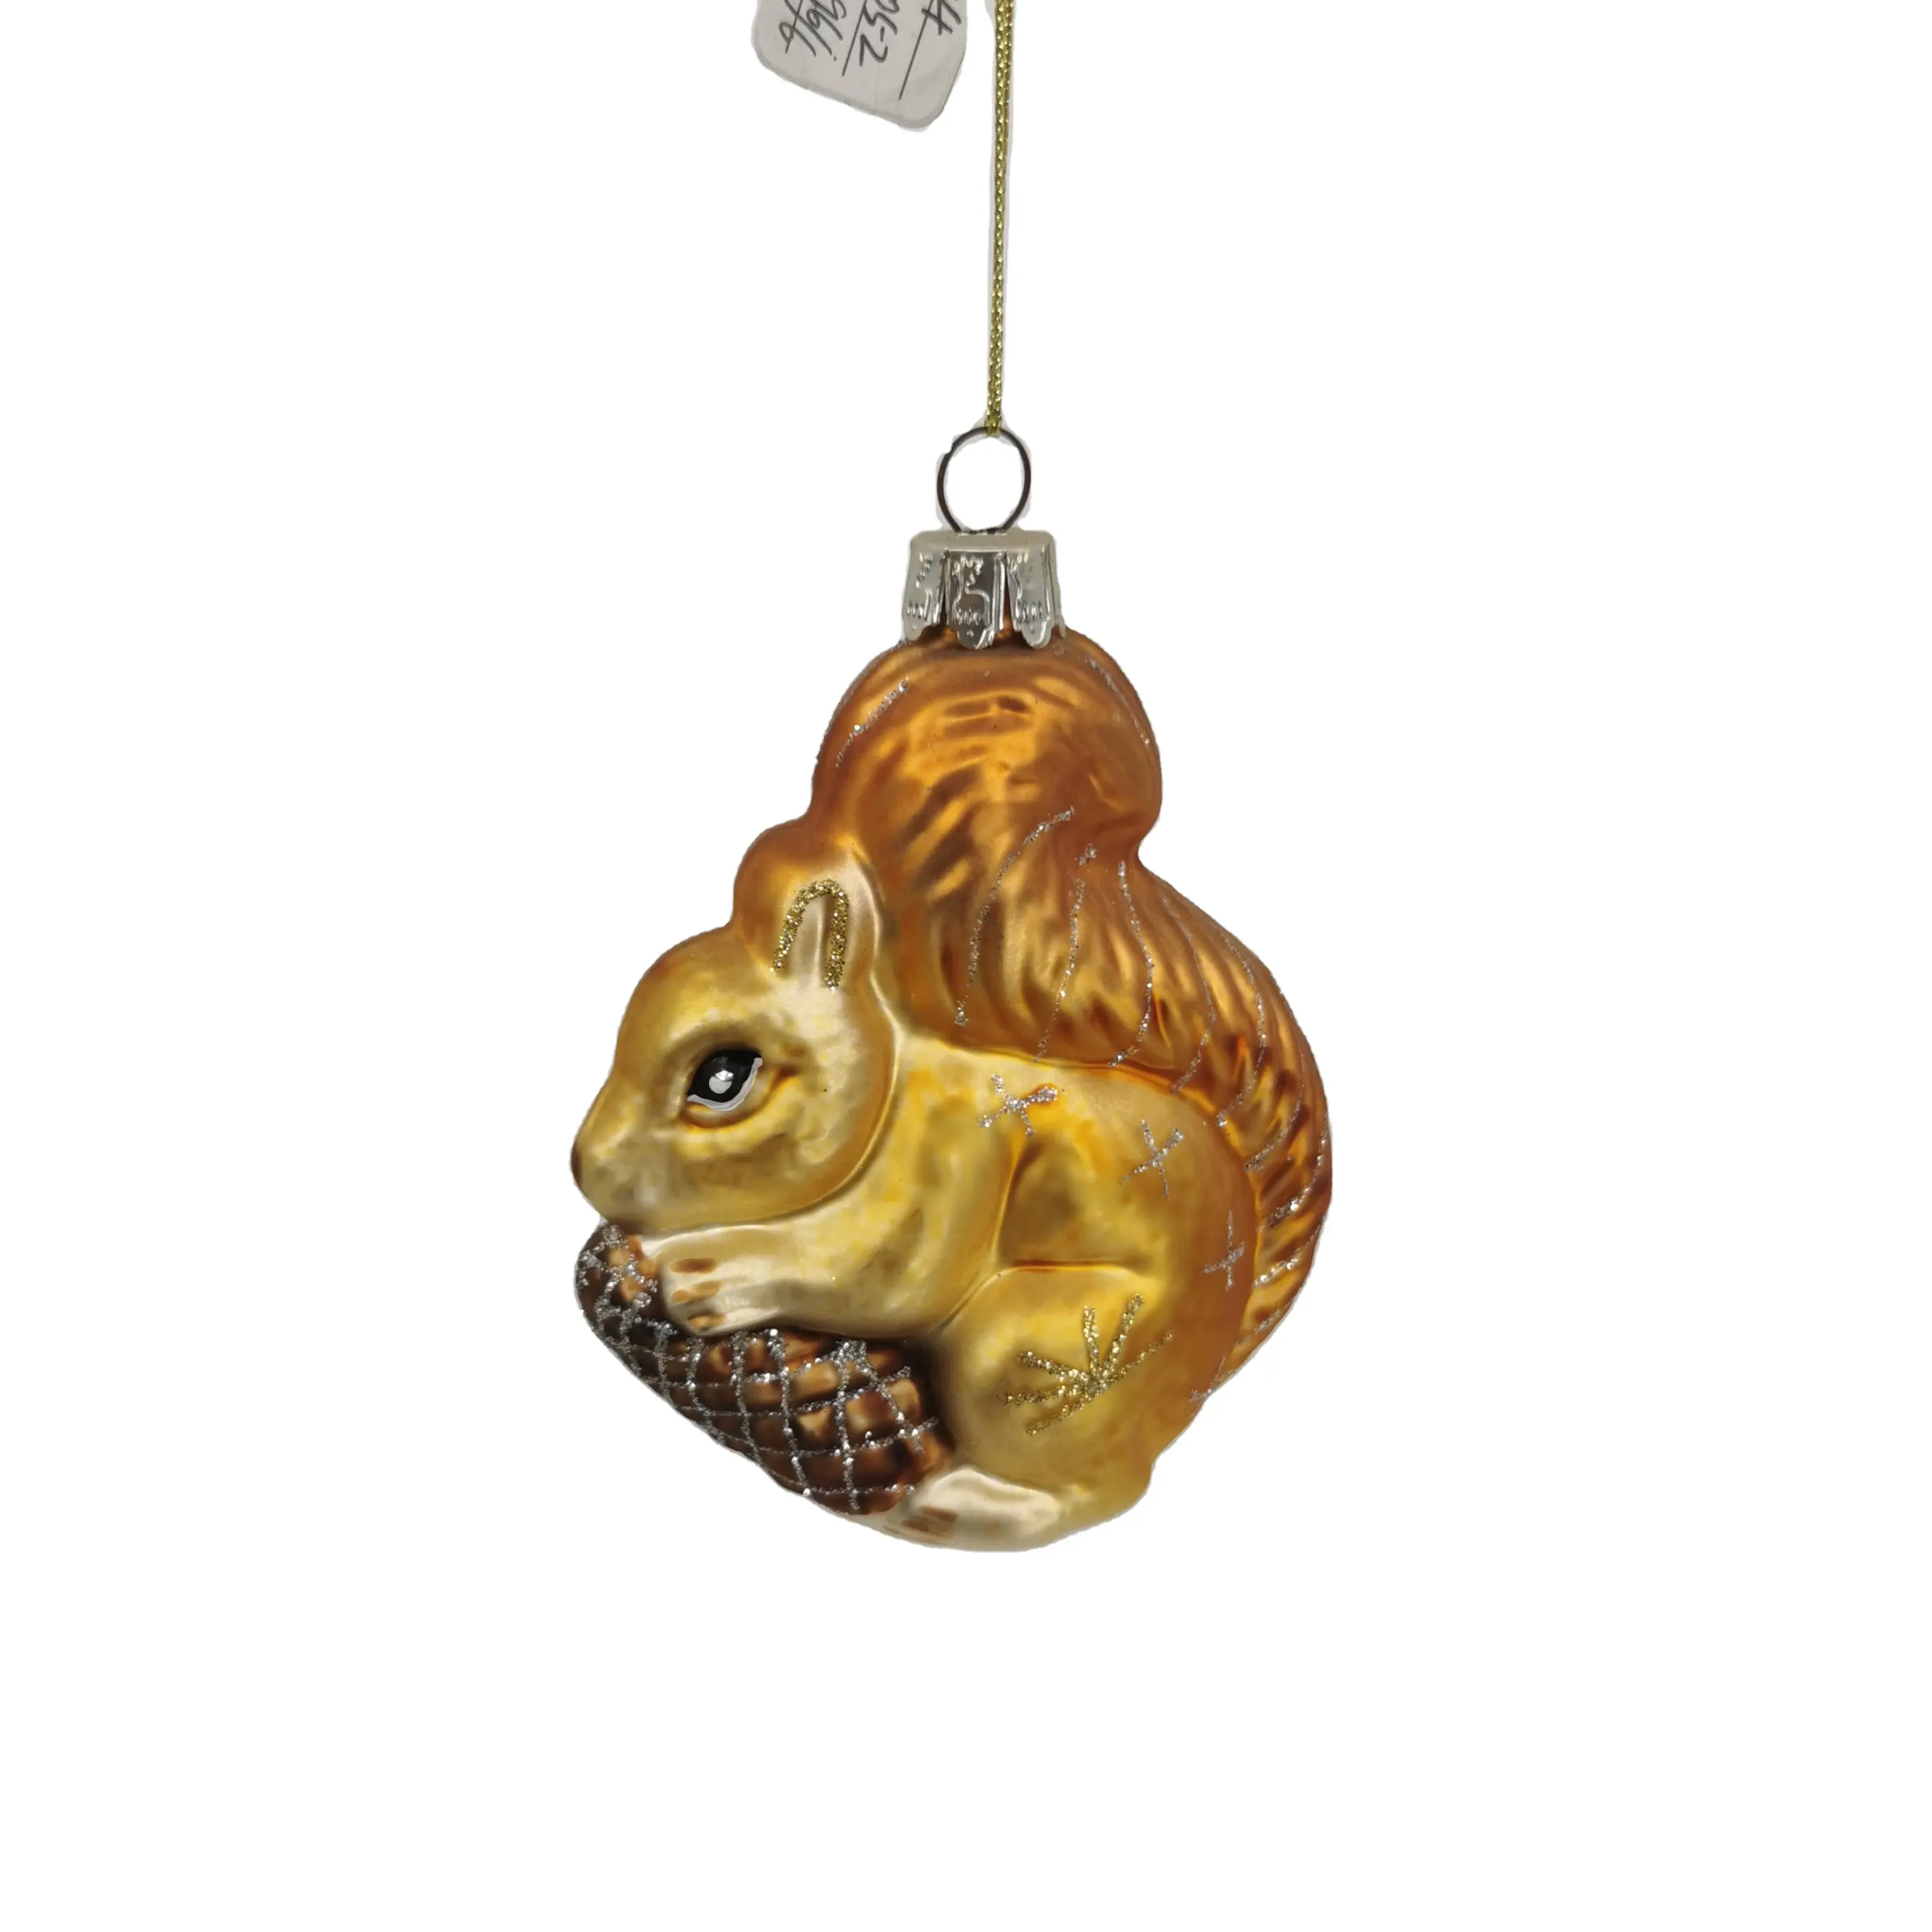 Yeni sıcak satış yüksek kaliteli cam hayvanlar oyuncak Mini yılbaşı ağacı süsleme hediye